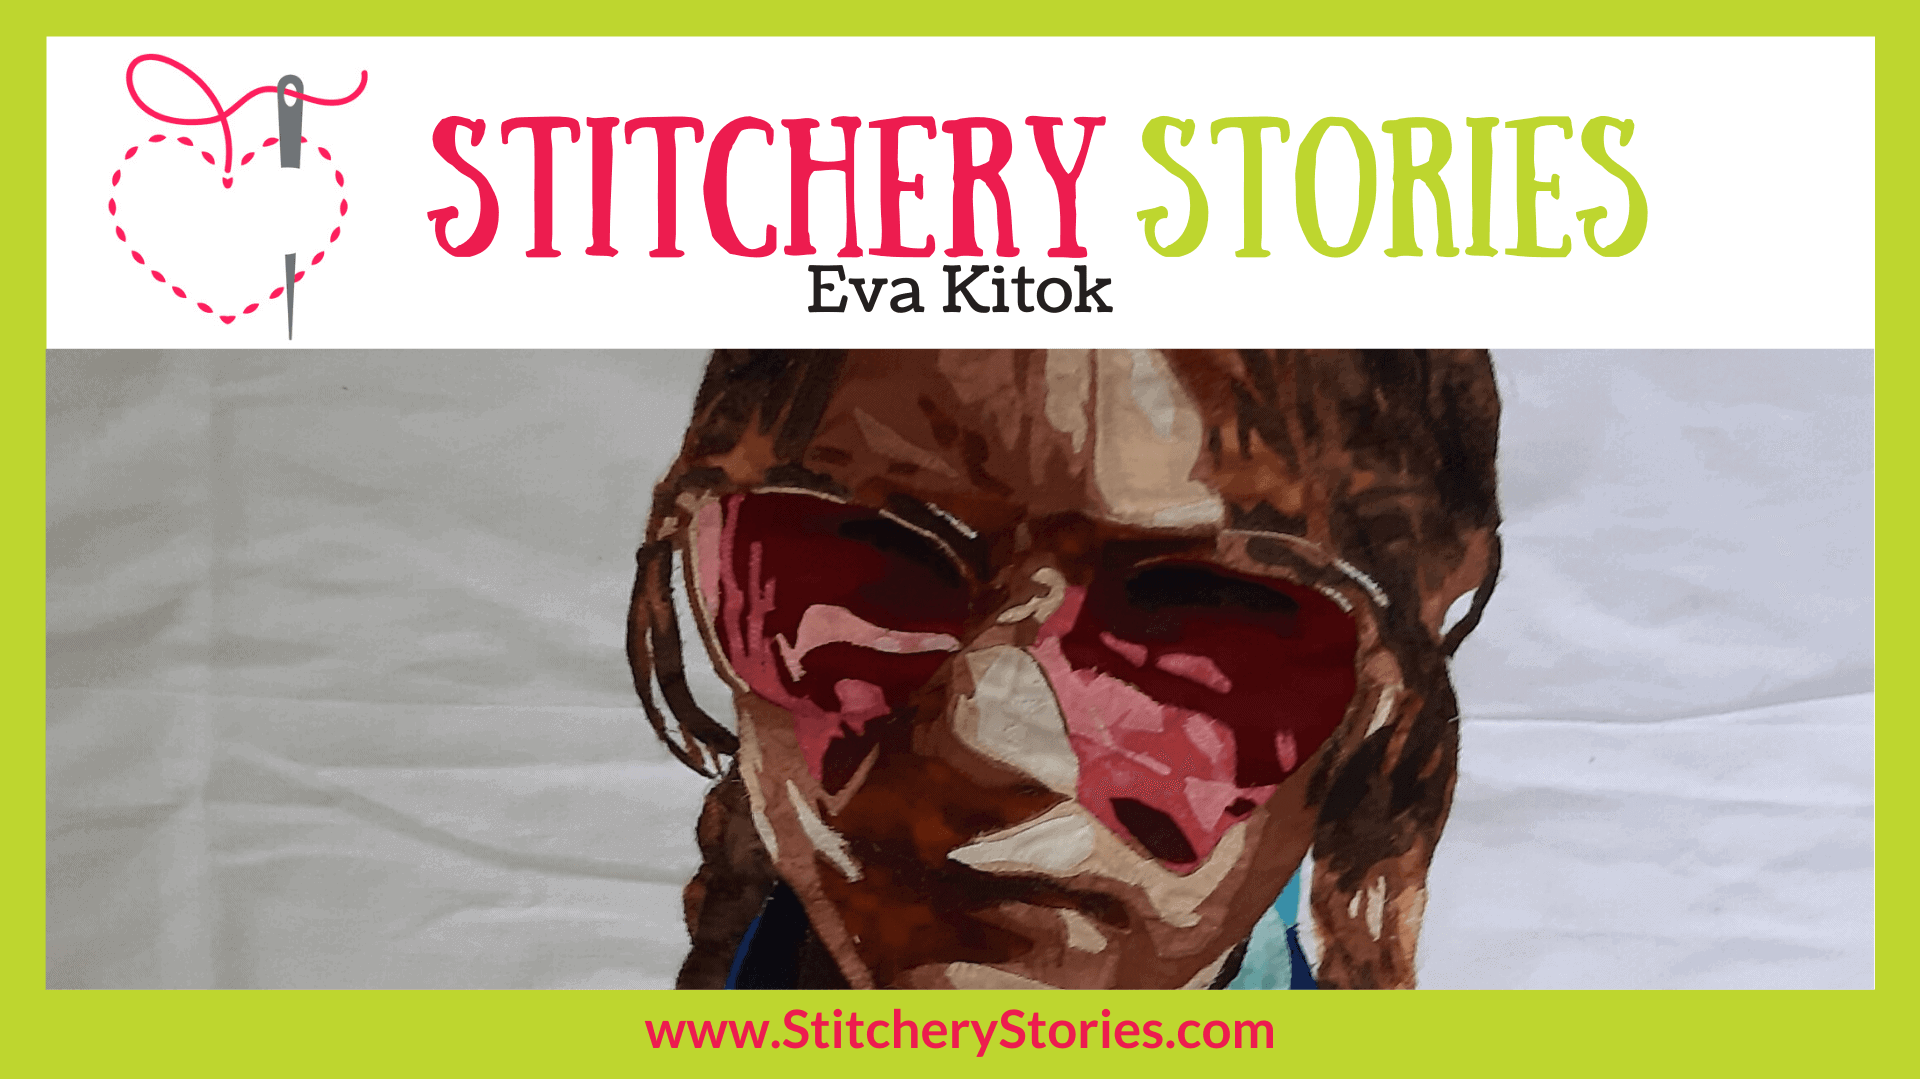 Eva Kitok guest Stitchery Stories textile art podcast Wide Art